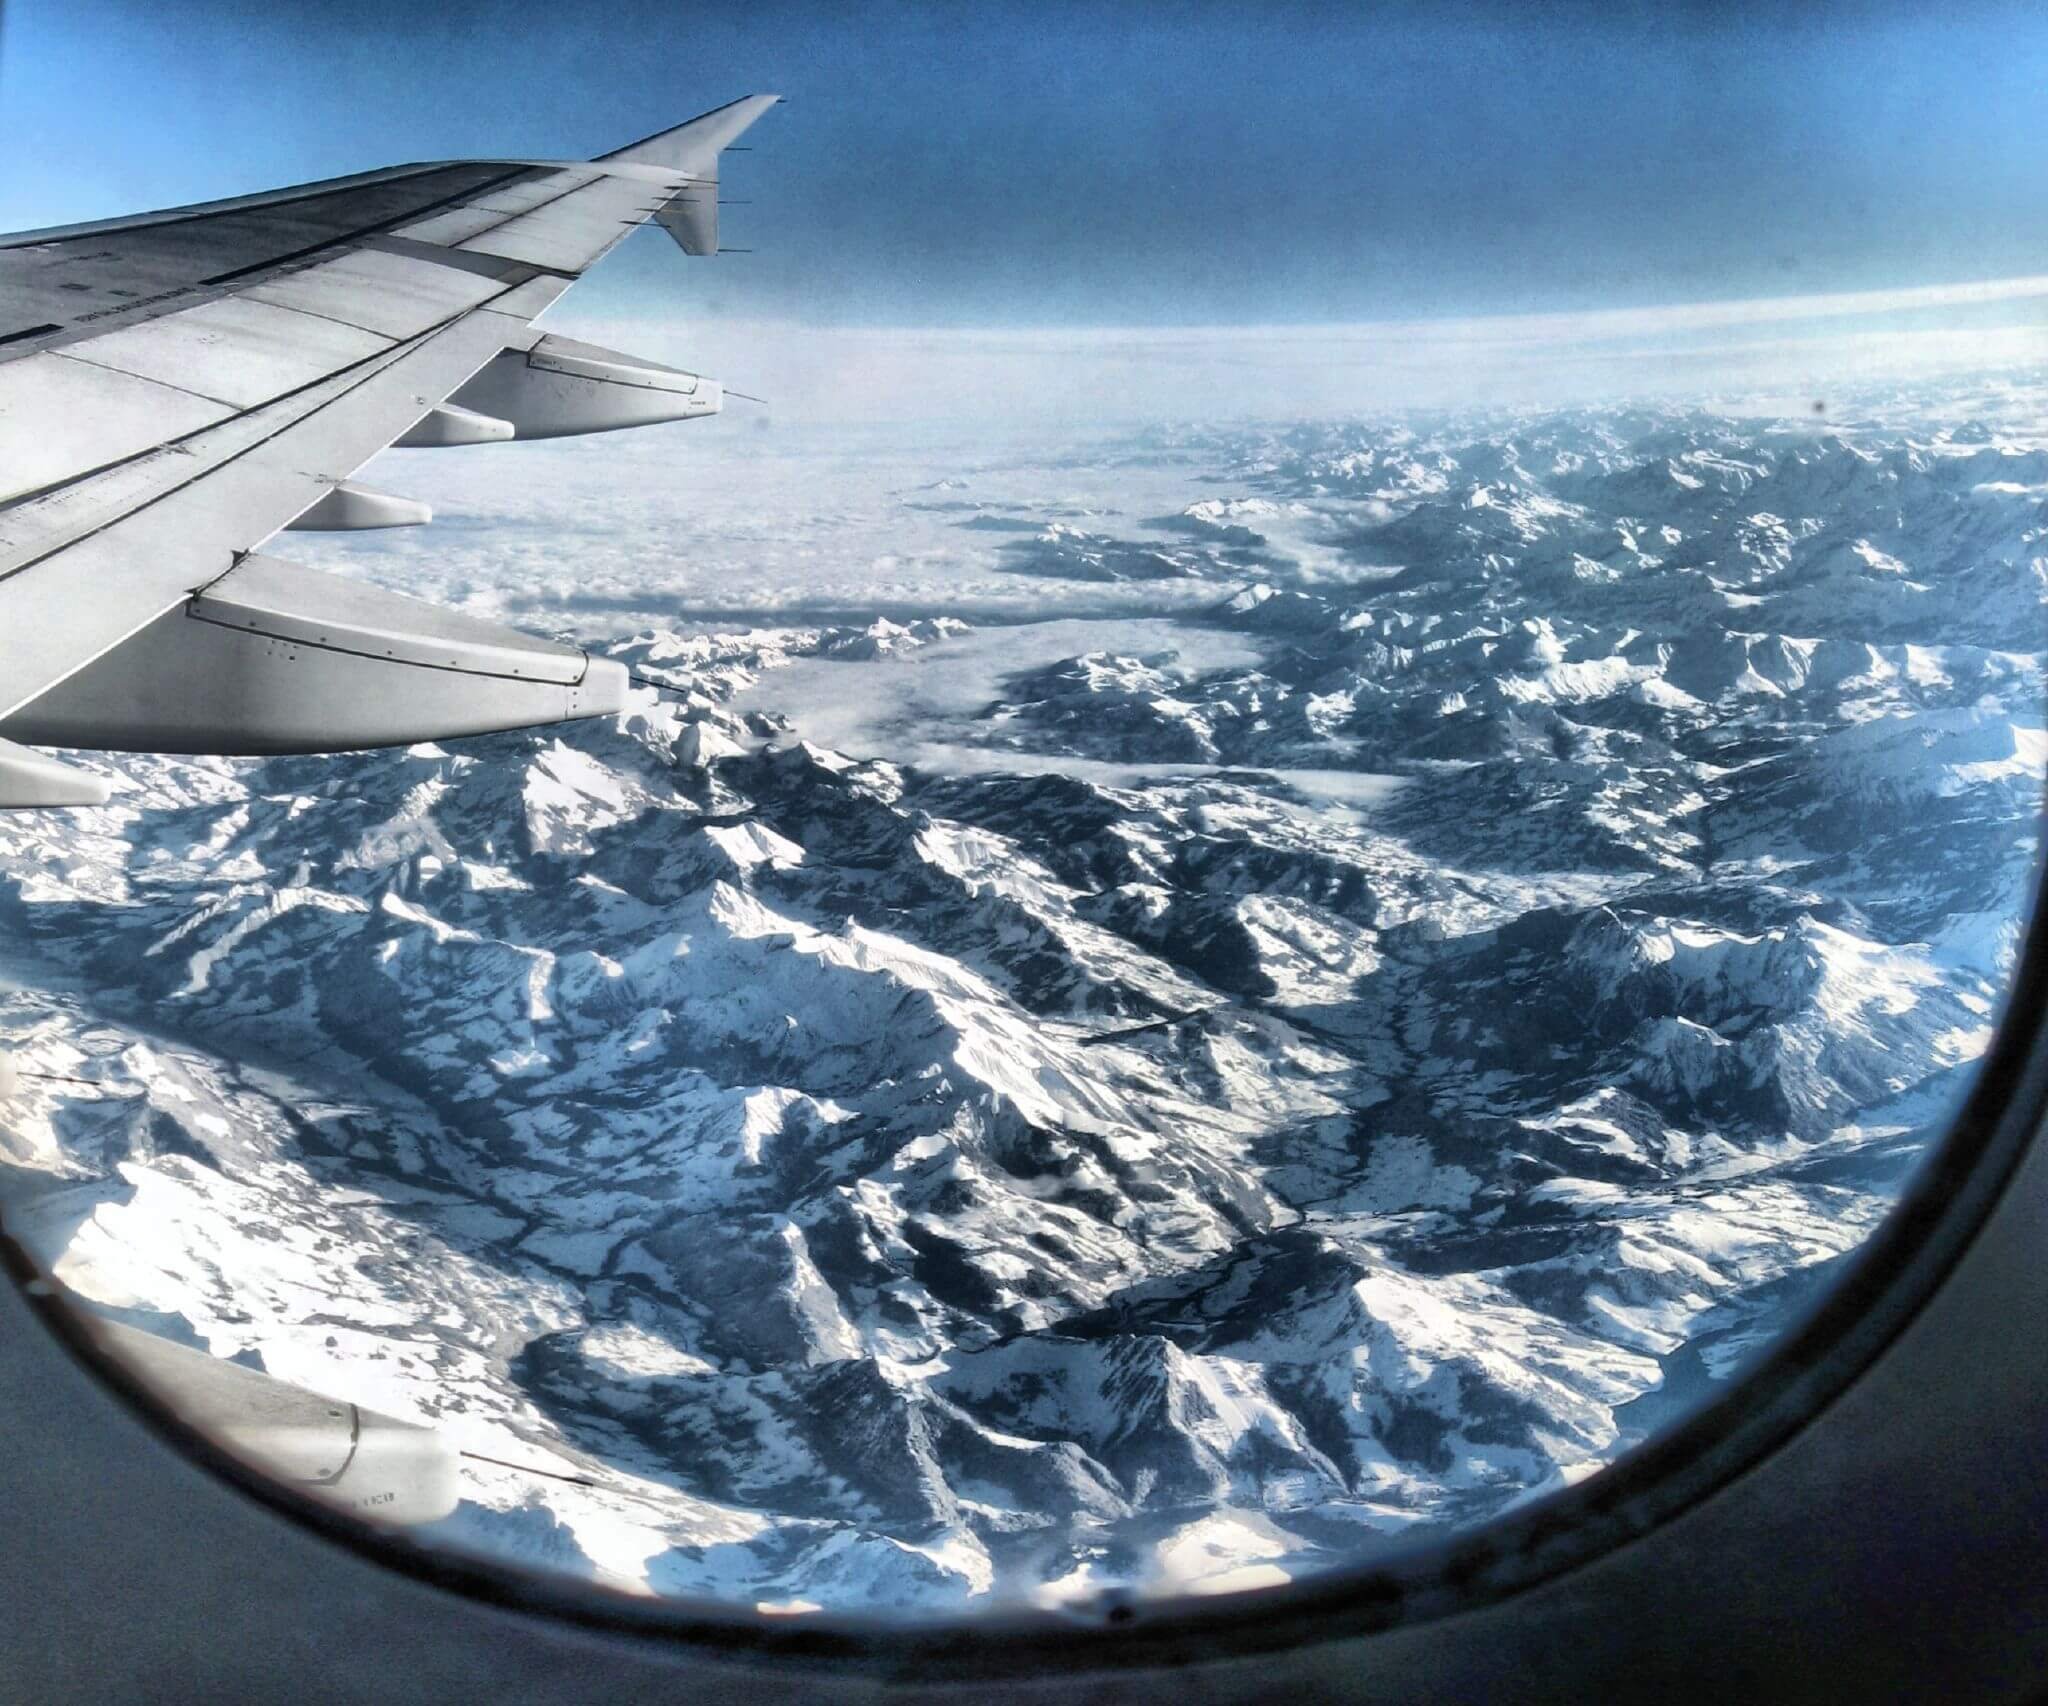 Фото с самолета из окна днем